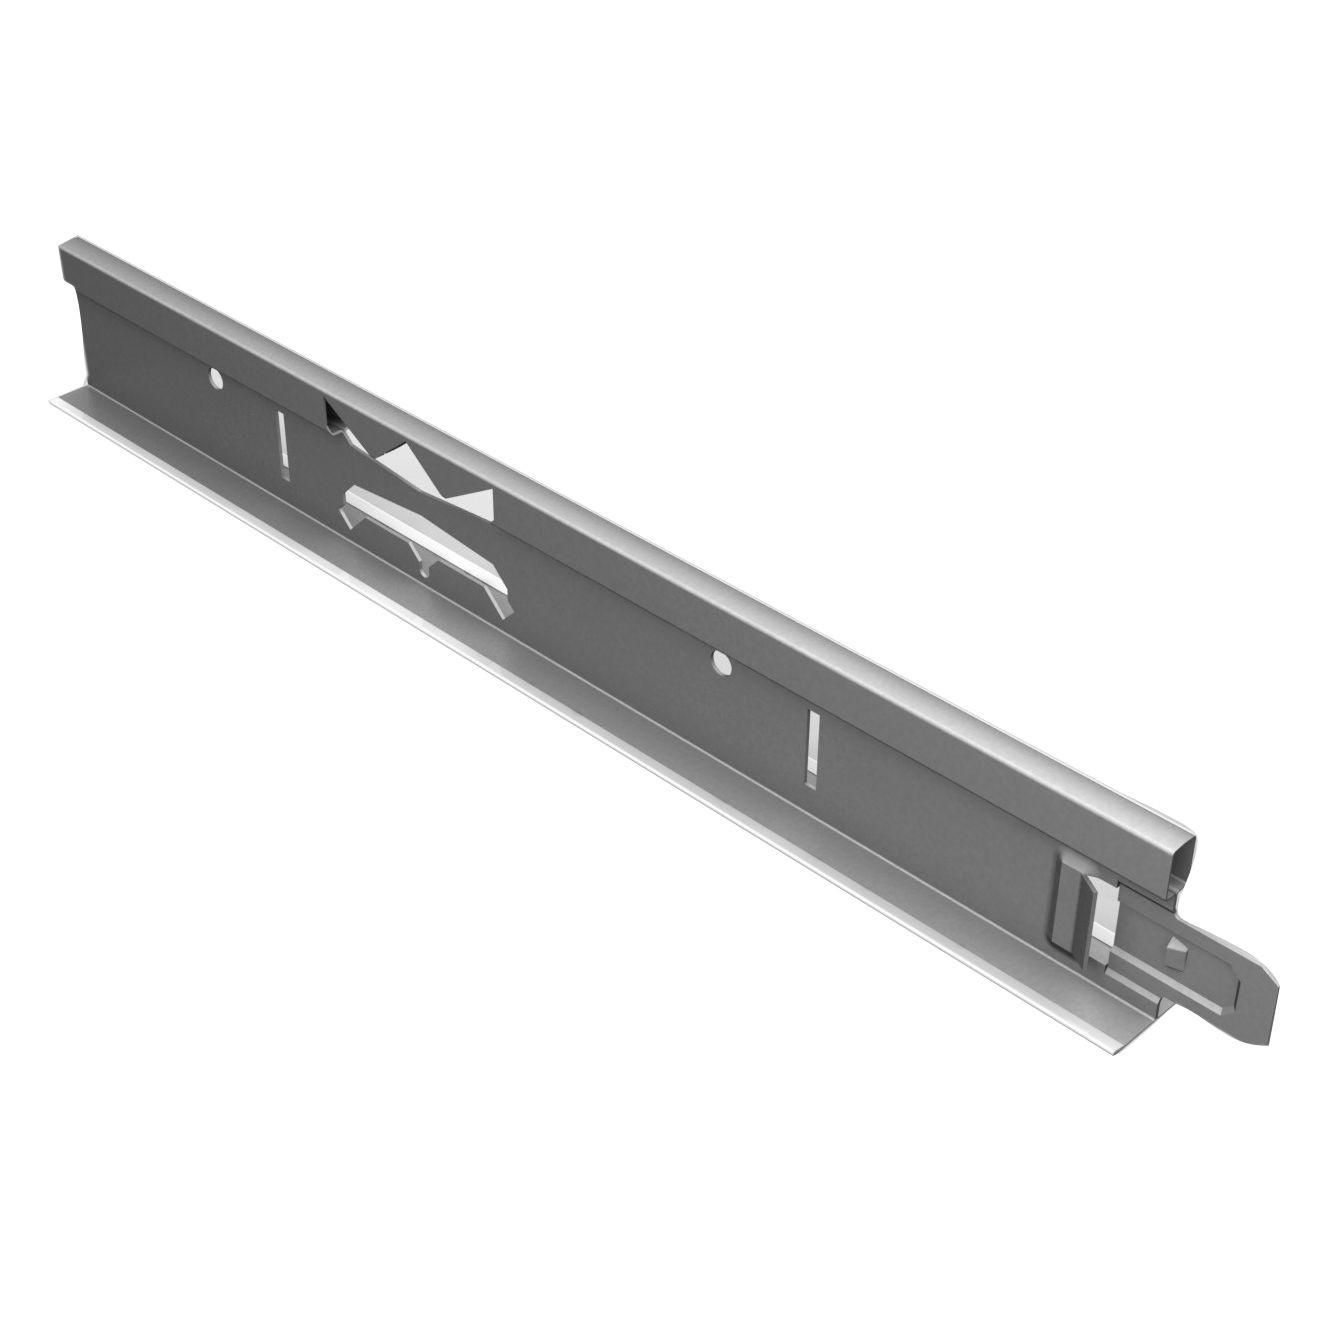 Accesorii tavane casetate - Profil principal pentru tavan casetat Rigips Quick Lock 24 x 3600 mm, https:maxbau.ro